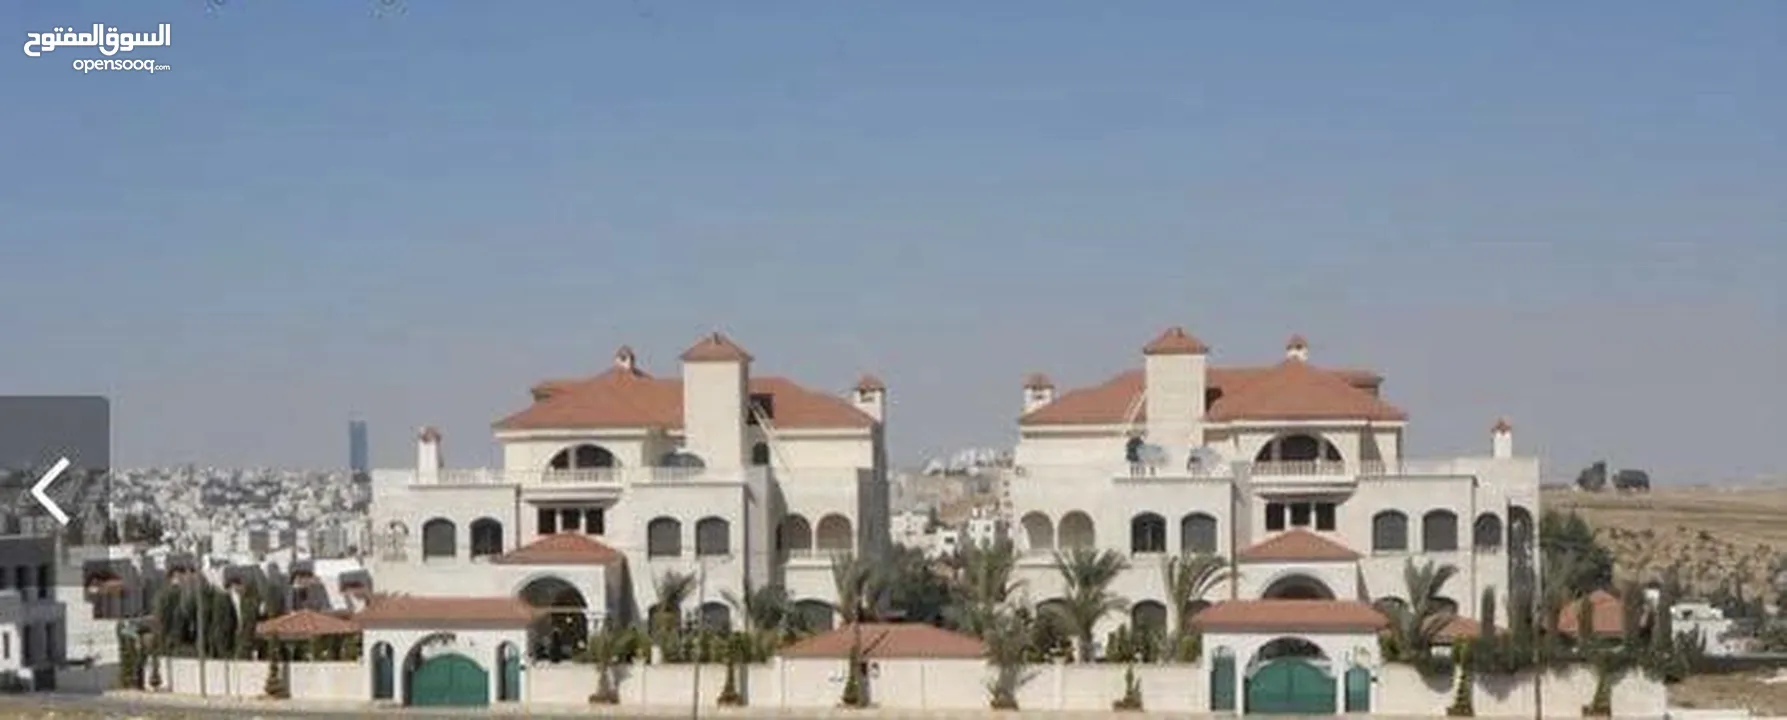 قصرين فاخرين بناء خاص في اجمل مناطق عمان الغرببه